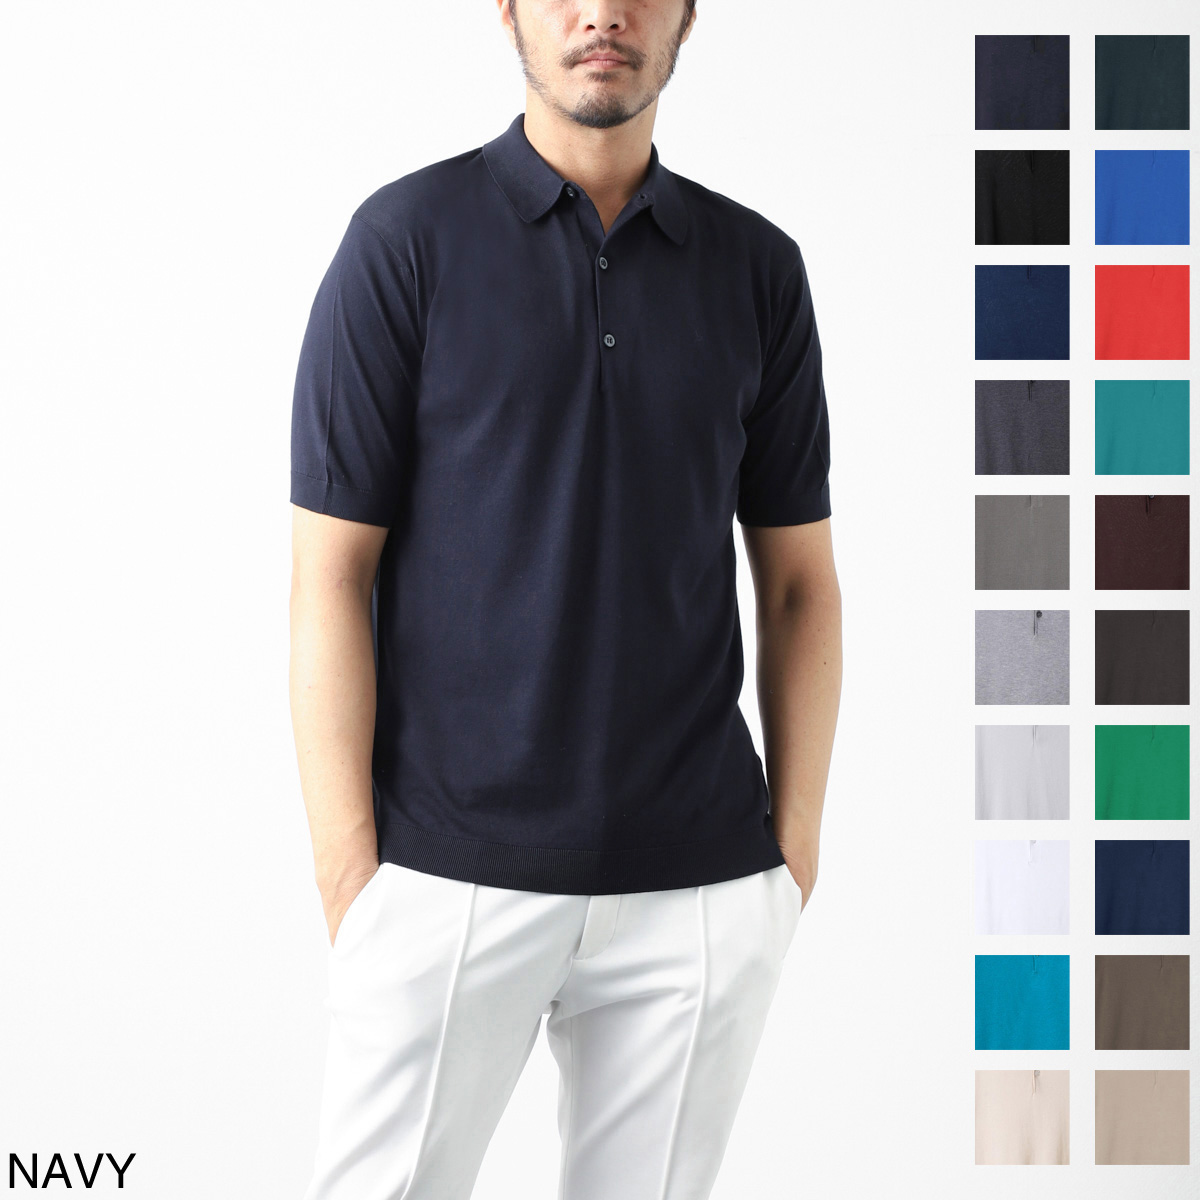 夏の必需品 メンズポロシャツ のオススメ人気ブランド18選 選び方 徹底解説 紳士のシャツ